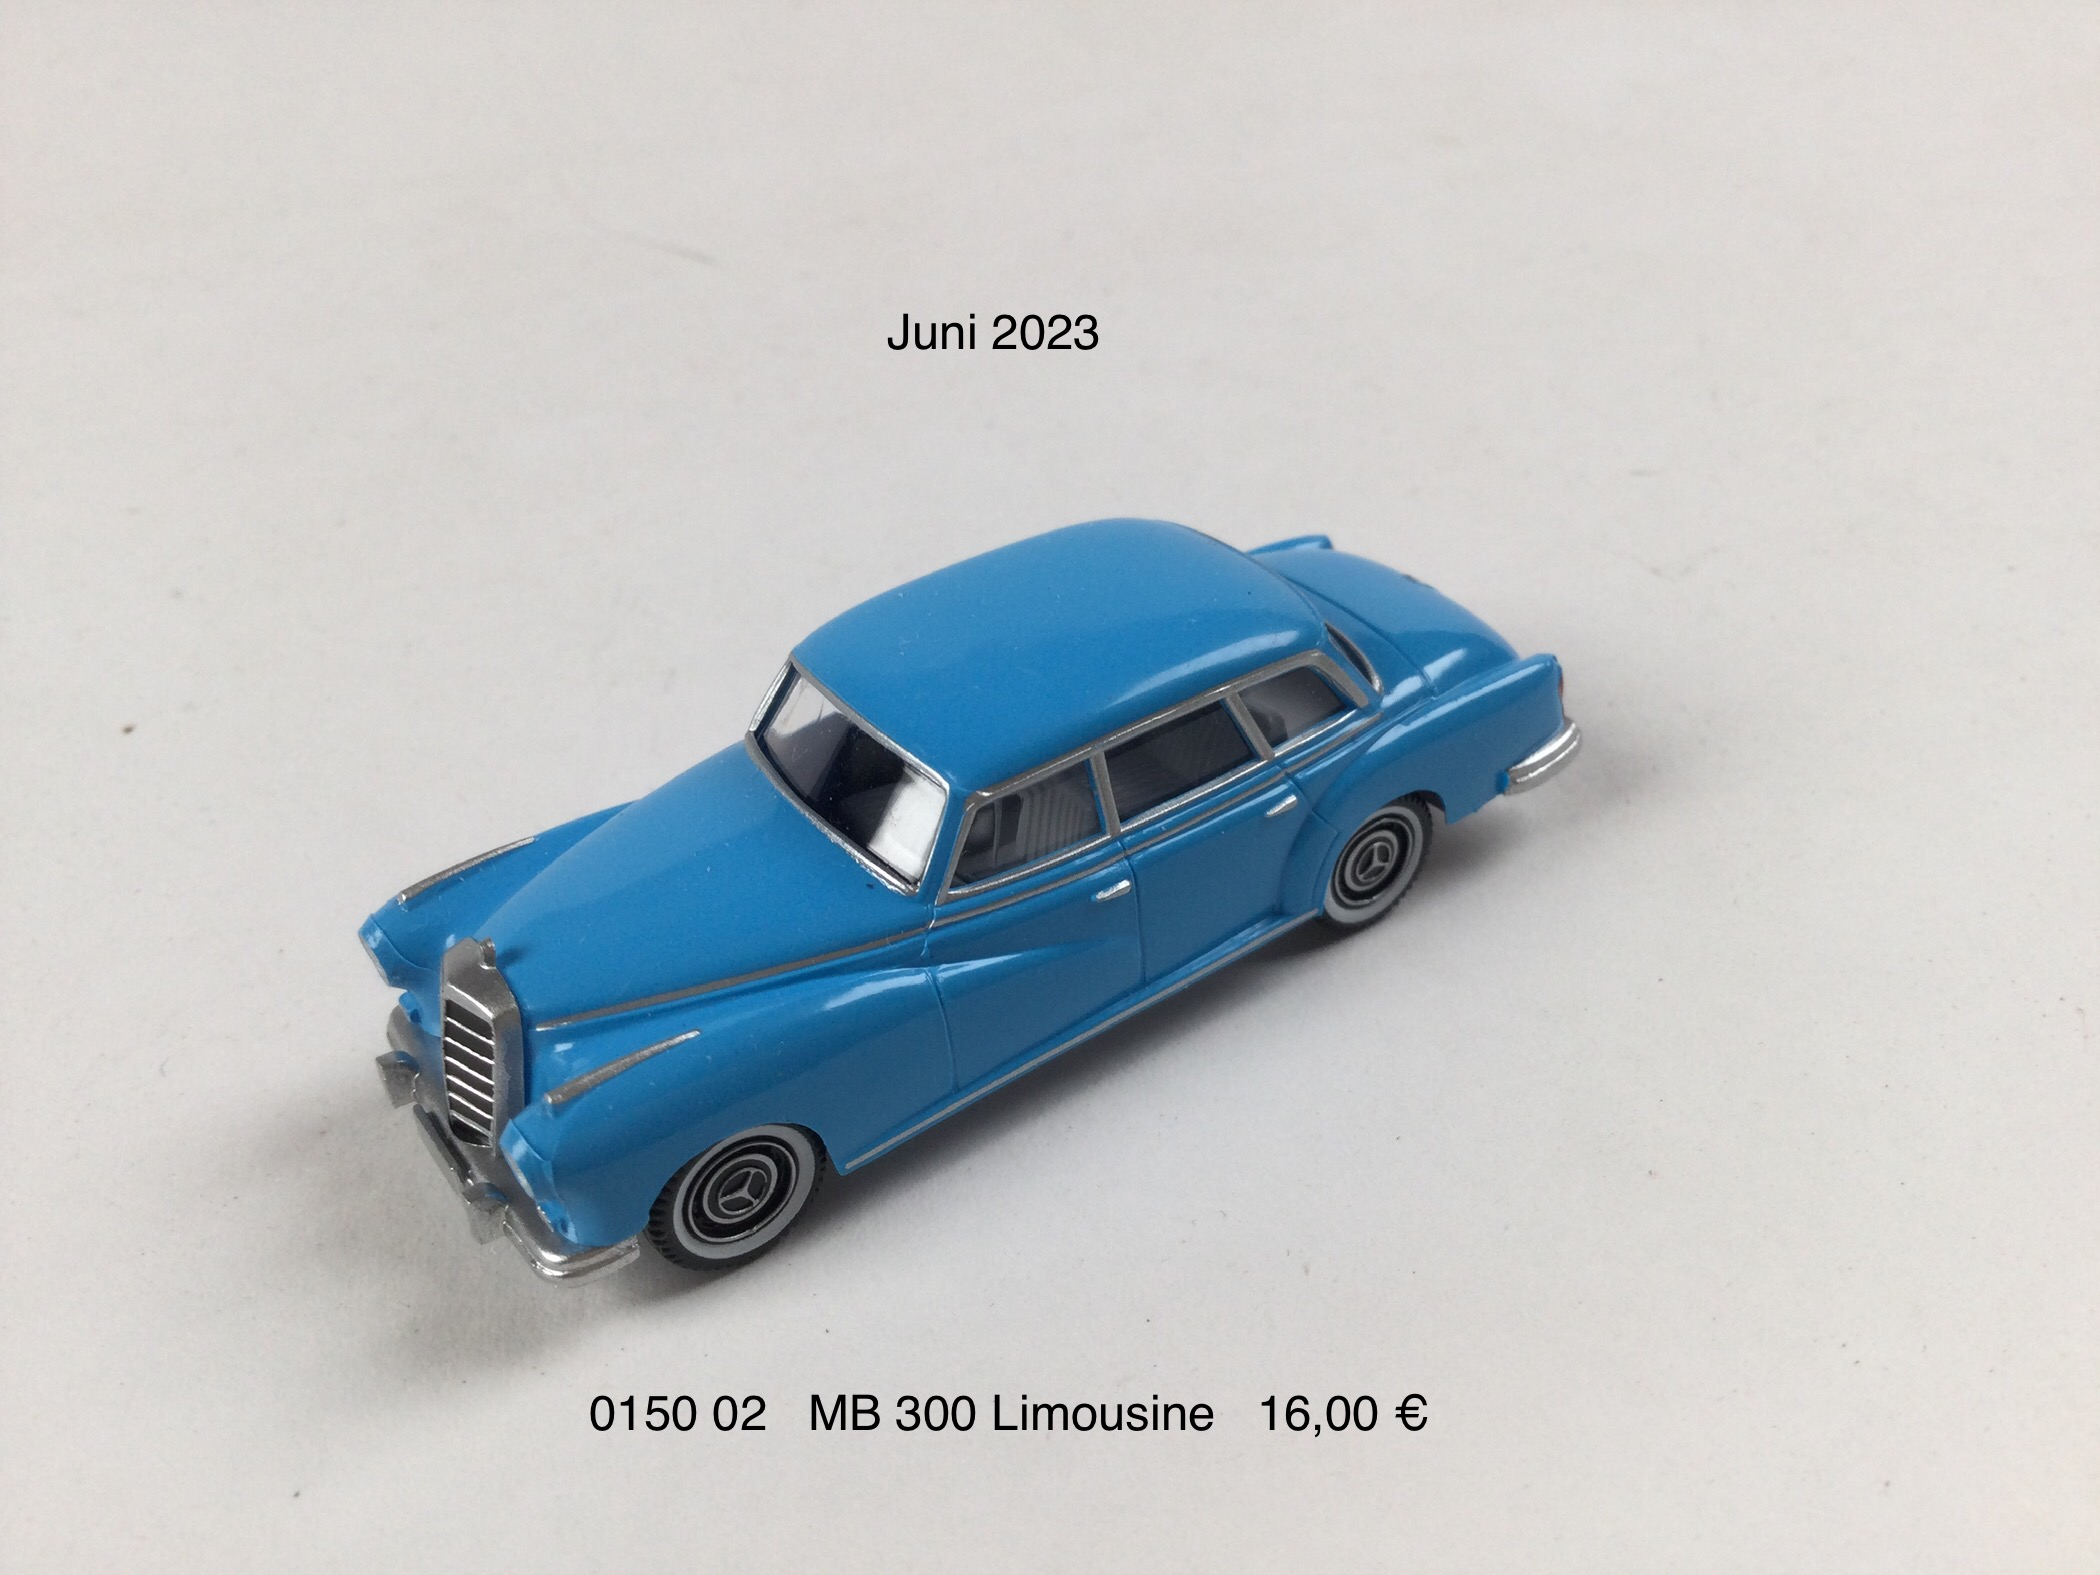 MB 300 Limousine "hellblau"